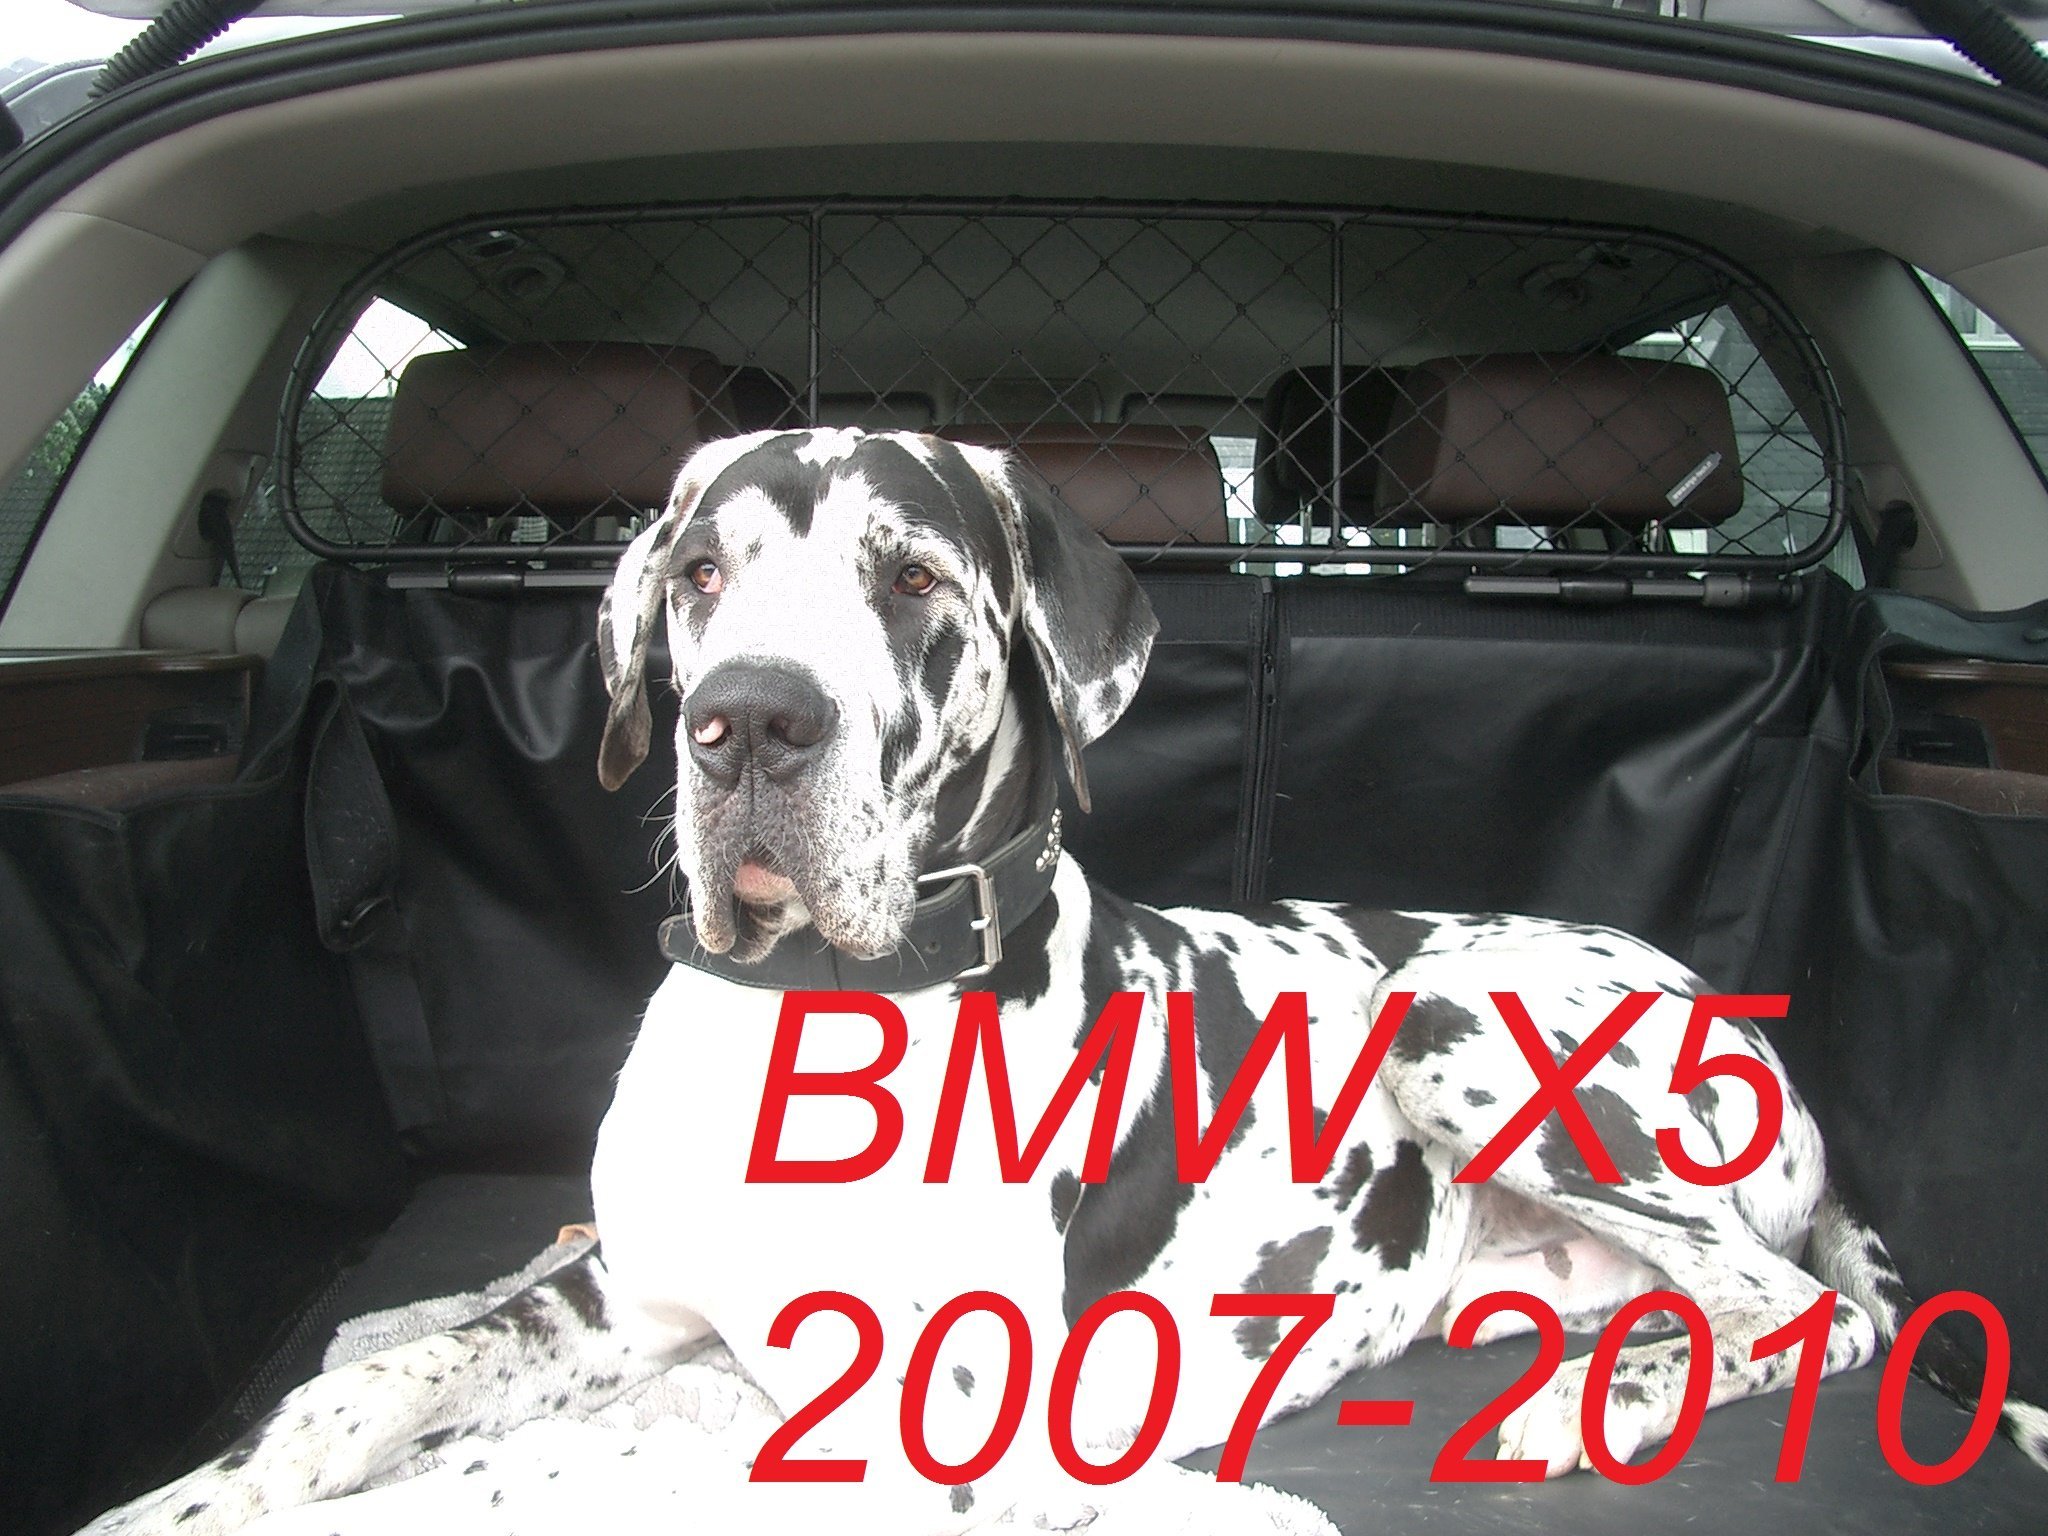 ERGOTECH Trennnetz/Hundenetz RDA100-S8 kbm014, für Hunde und Gepäck. Sicher, komfortabel für Ihren Hund, garantiert!